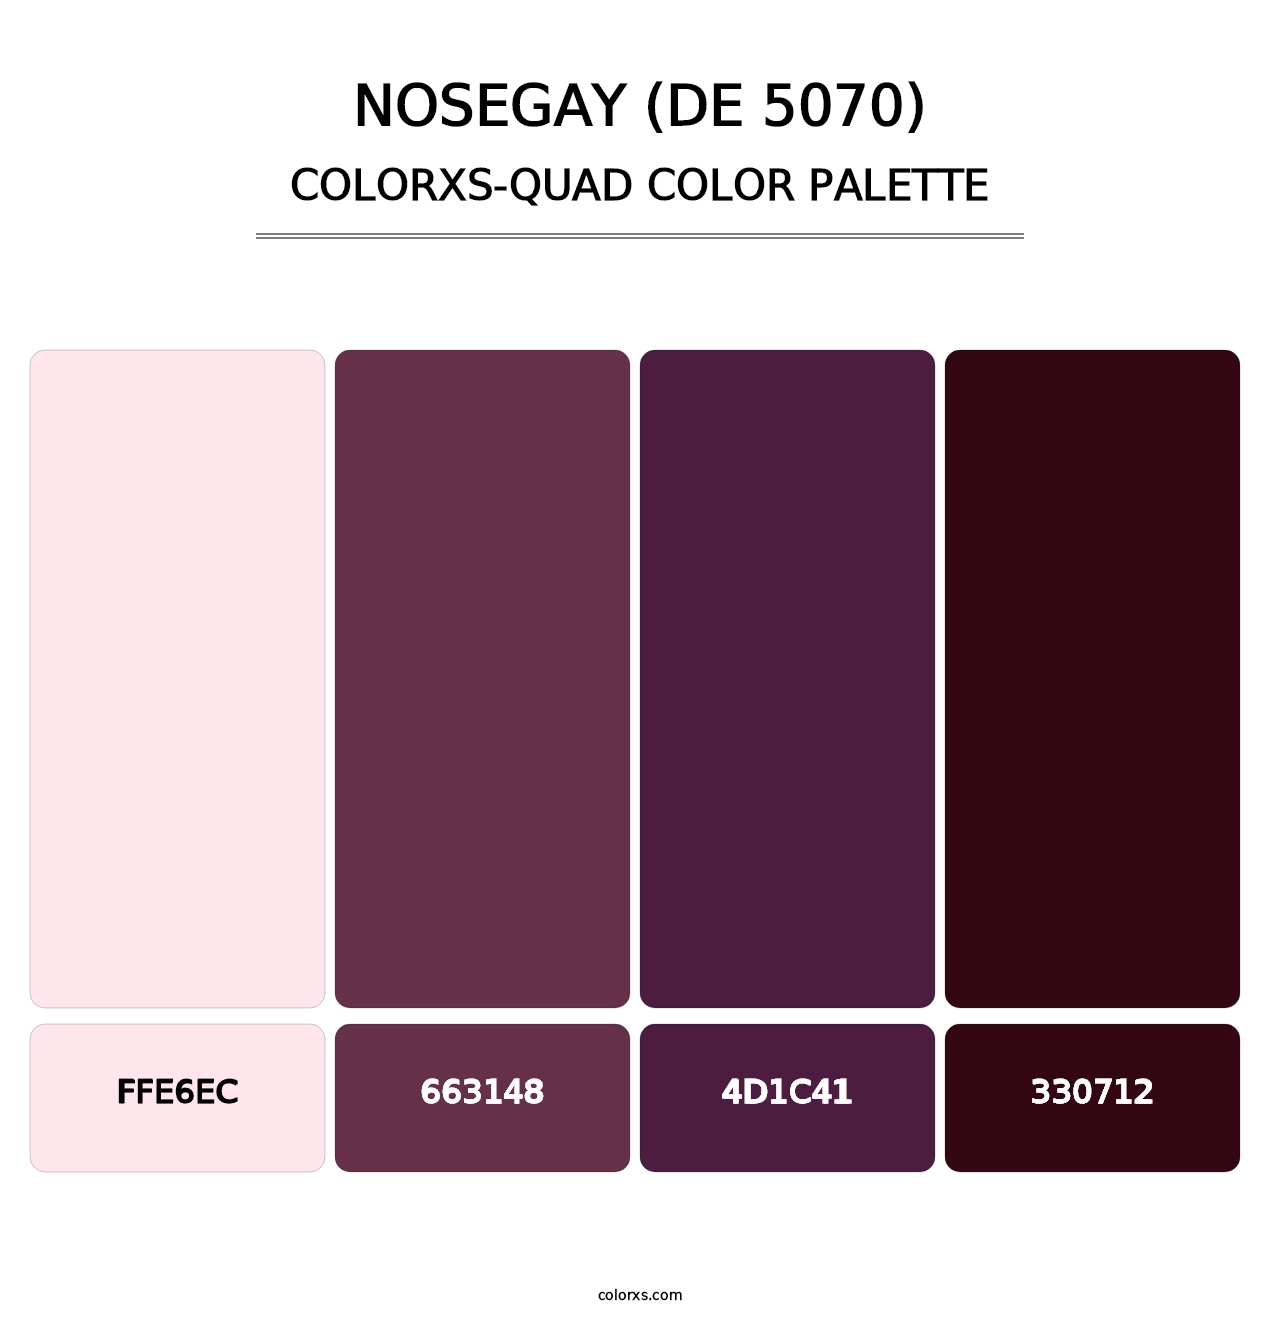 Nosegay (DE 5070) - Colorxs Quad Palette